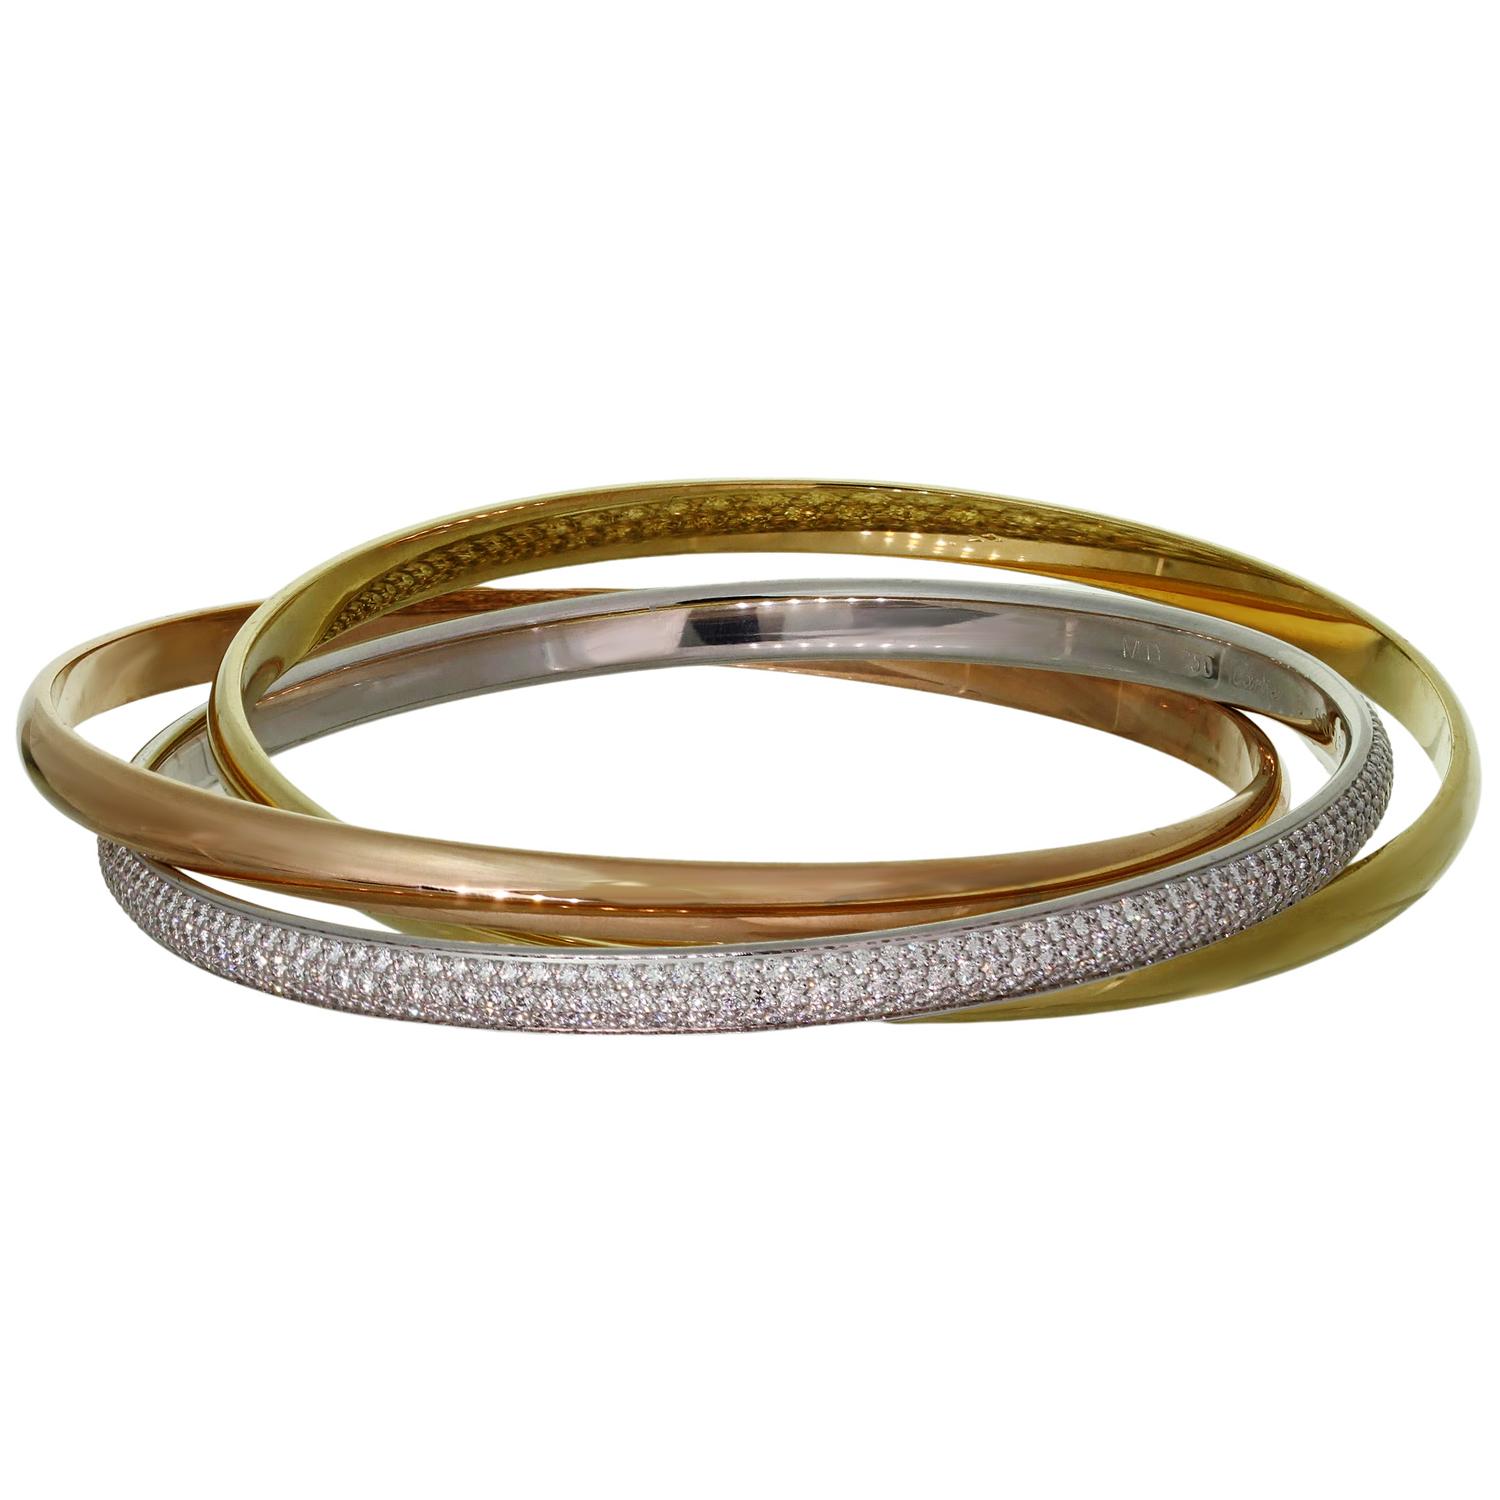 Ce fabuleux bracelet de la collection Trinity de Cartier se compose de 3 bracelets en or jaune, rose et blanc 18 carats. Le bracelet en or blanc est serti de diamants ronds de taille brillant D-E-F VVS1-VVS2 d'un poids estimé à 4,45 carats. Un